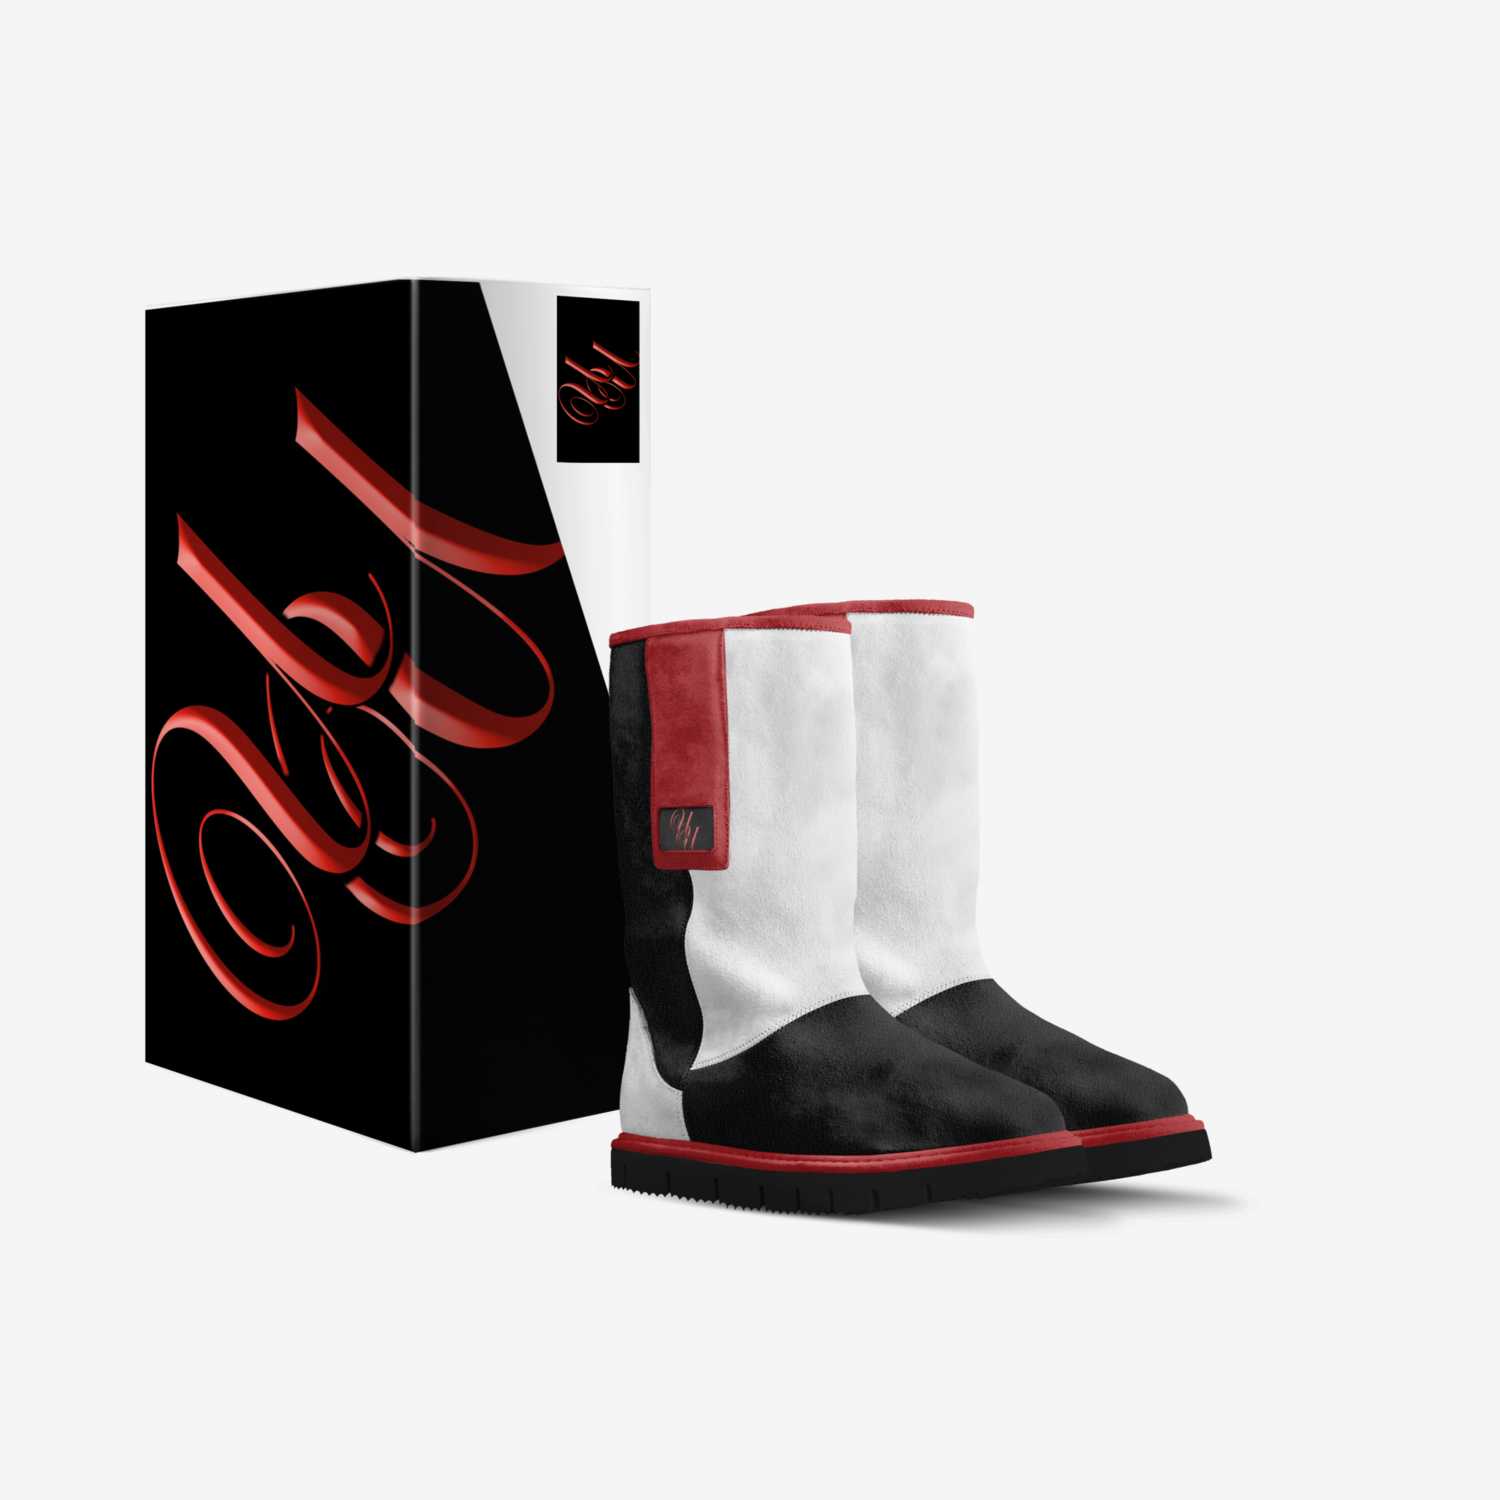 UU Footwear custom made in Italy shoes by Shetenne Walker | Box view